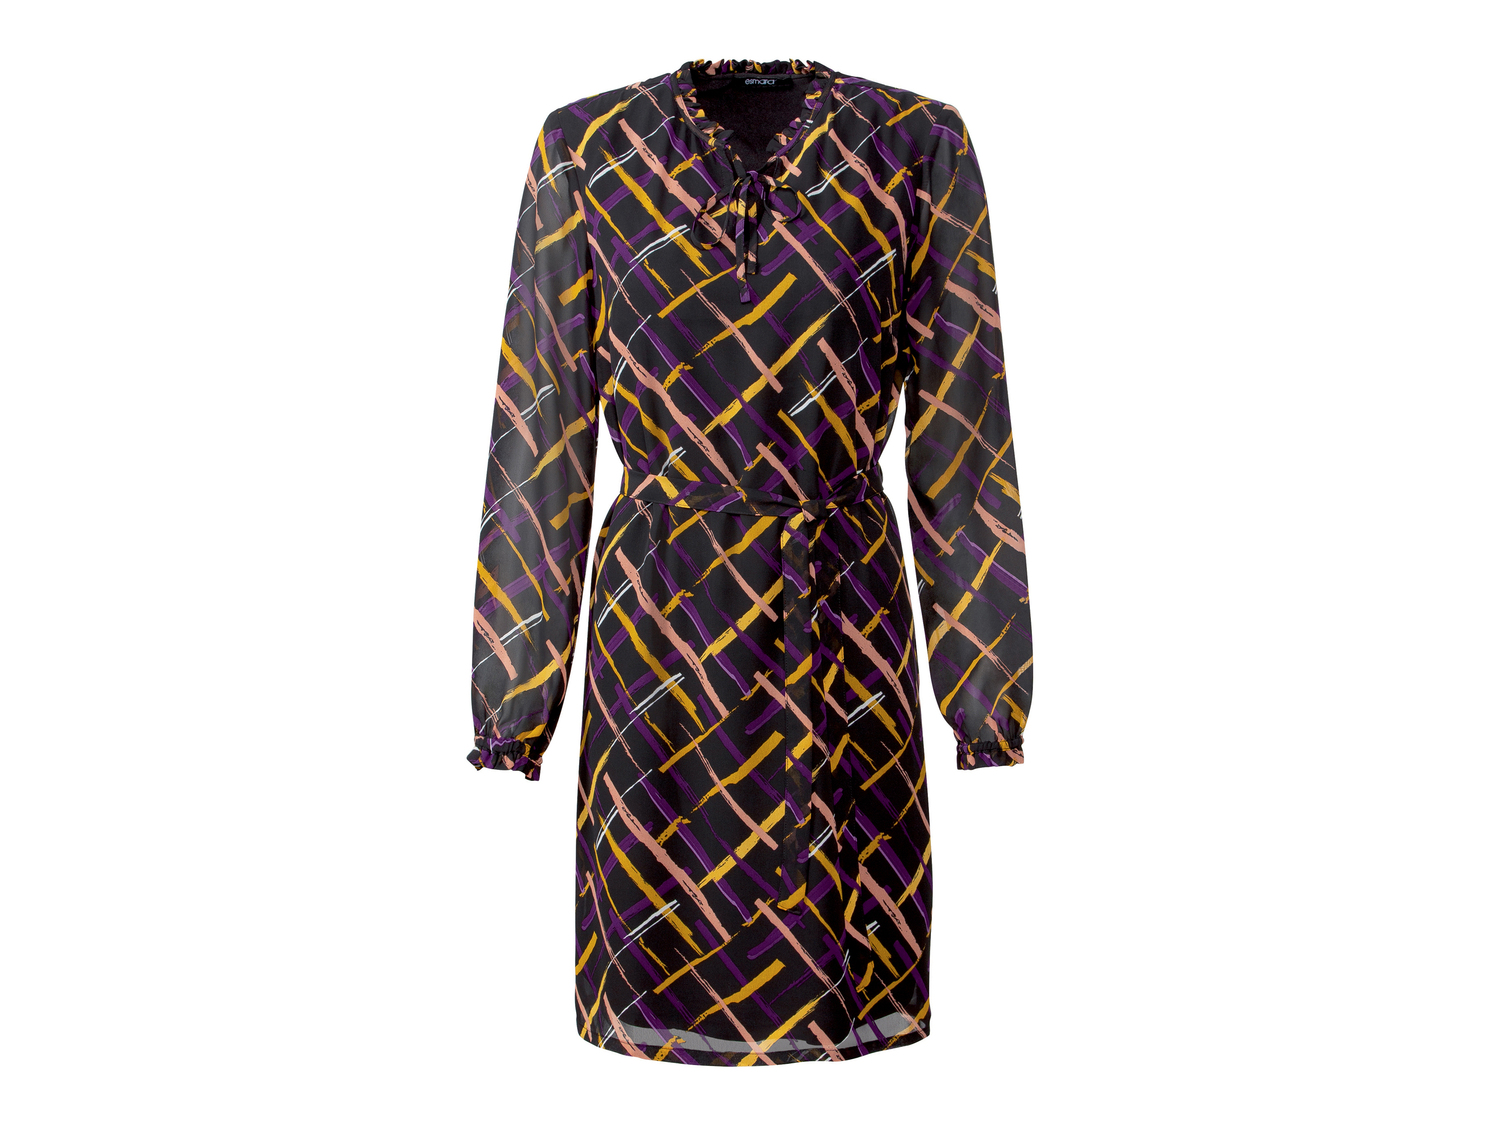 Vestito corto da donna Esmara, prezzo 11.99 &#8364; 
Misure: 38-48
Taglie disponibili

Caratteristiche

- ...